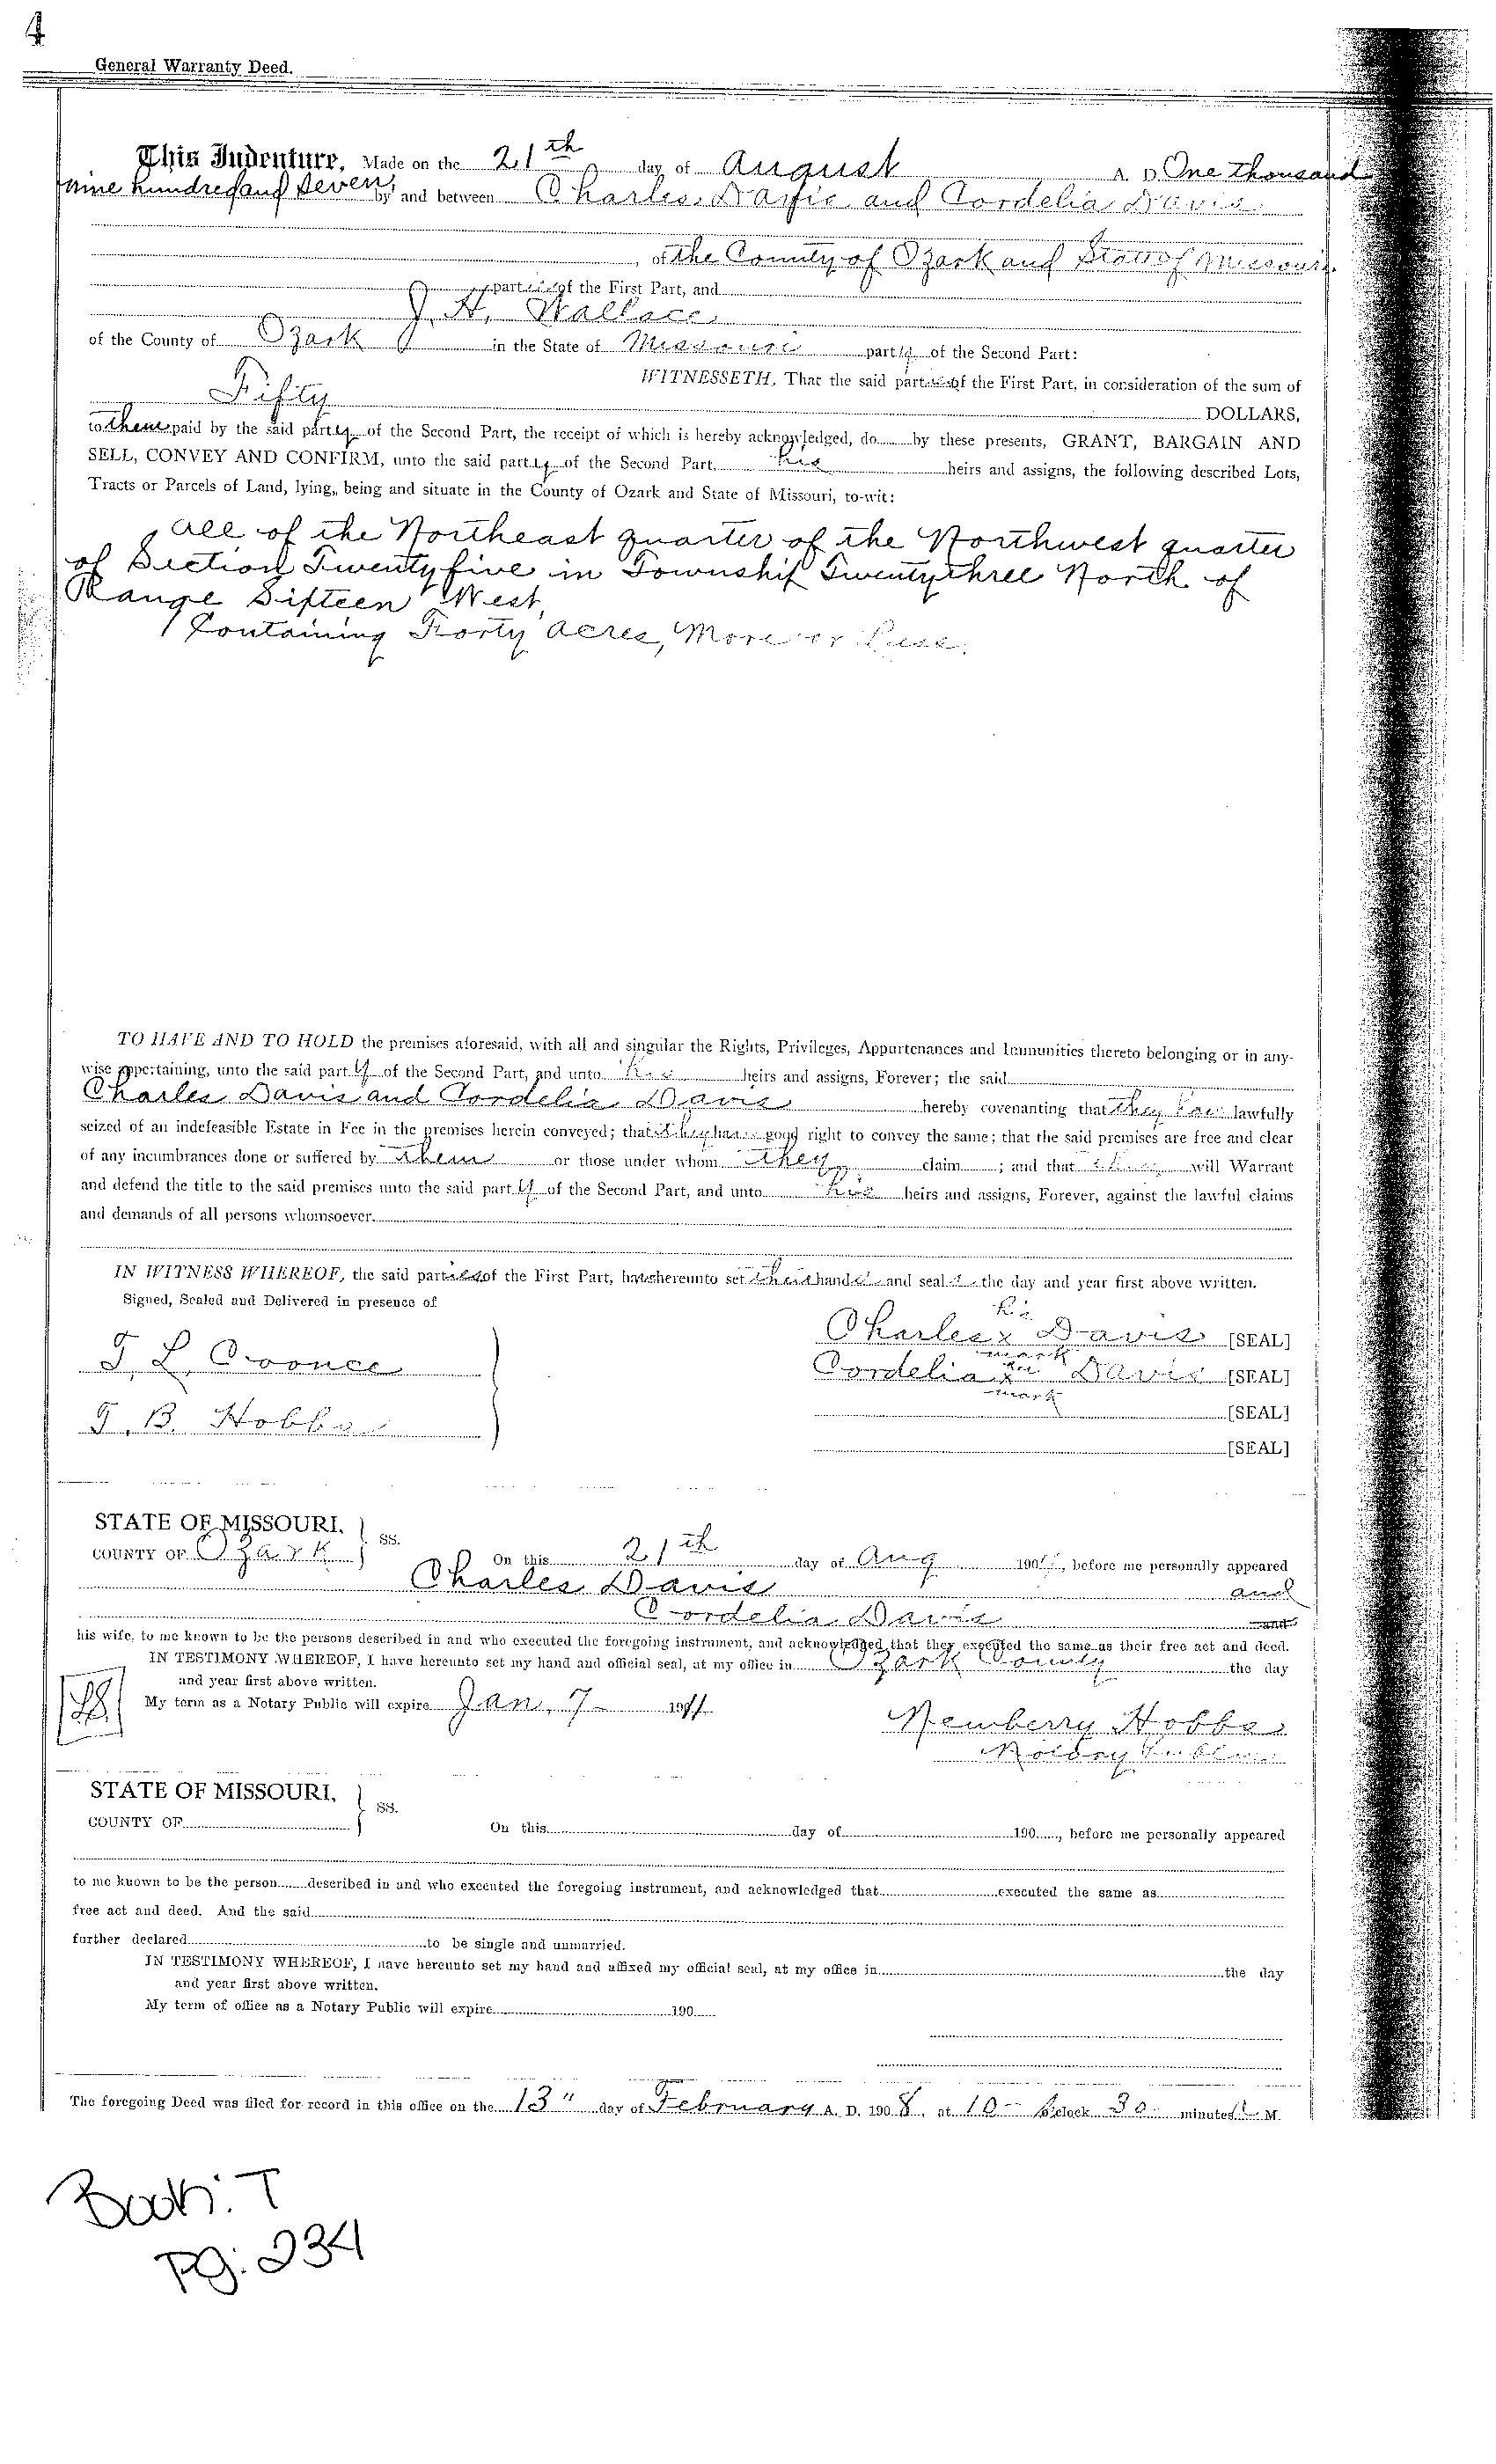 General Warranty Deed between Charles Davis & Cordelia Davis to J. H. Wallace